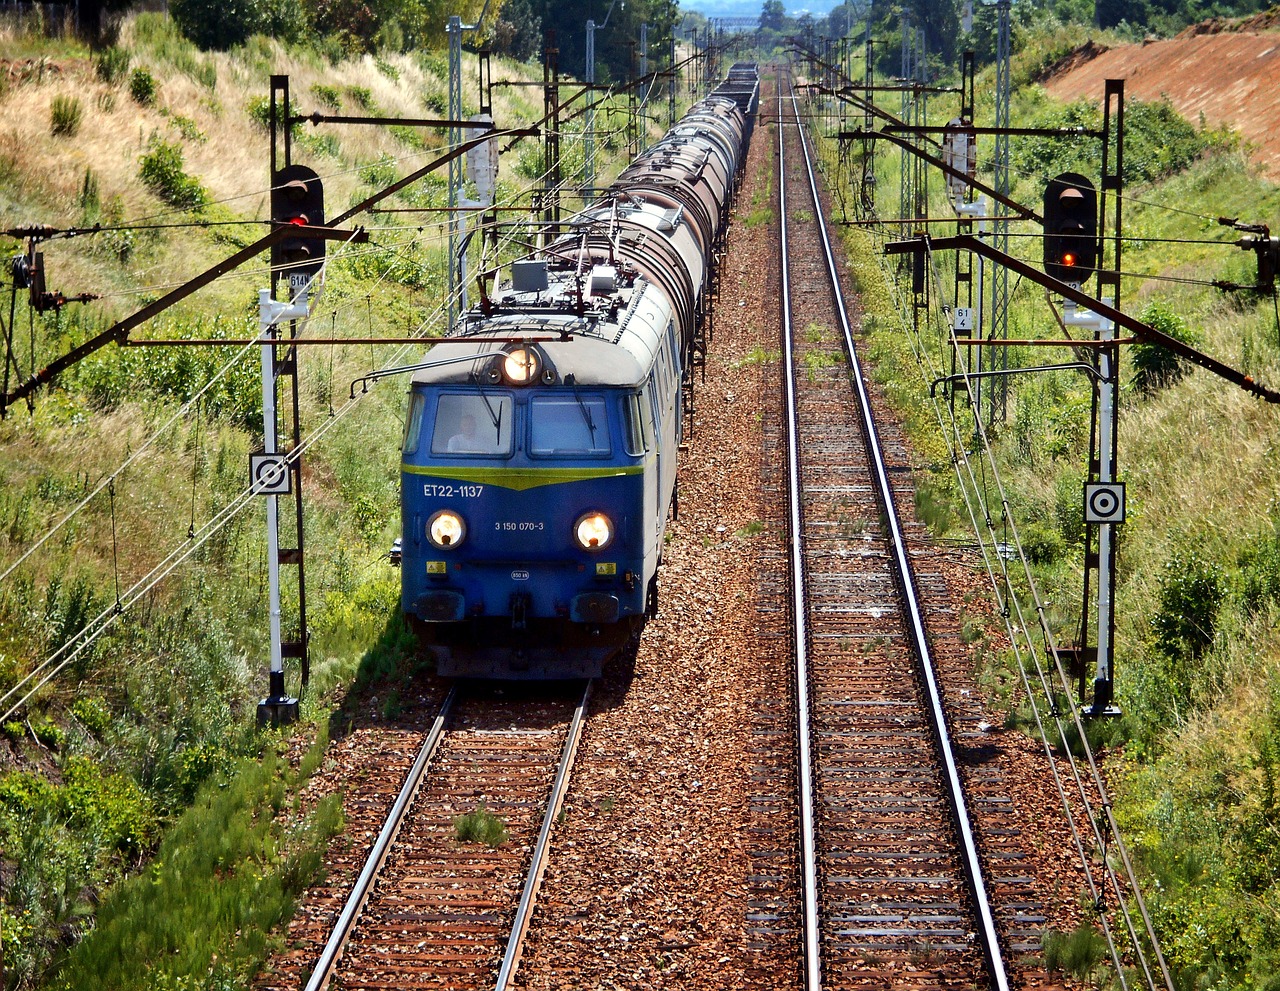 Obrazek dotyczący targów TRAKO 2017 przedstawia jadący pociąg.